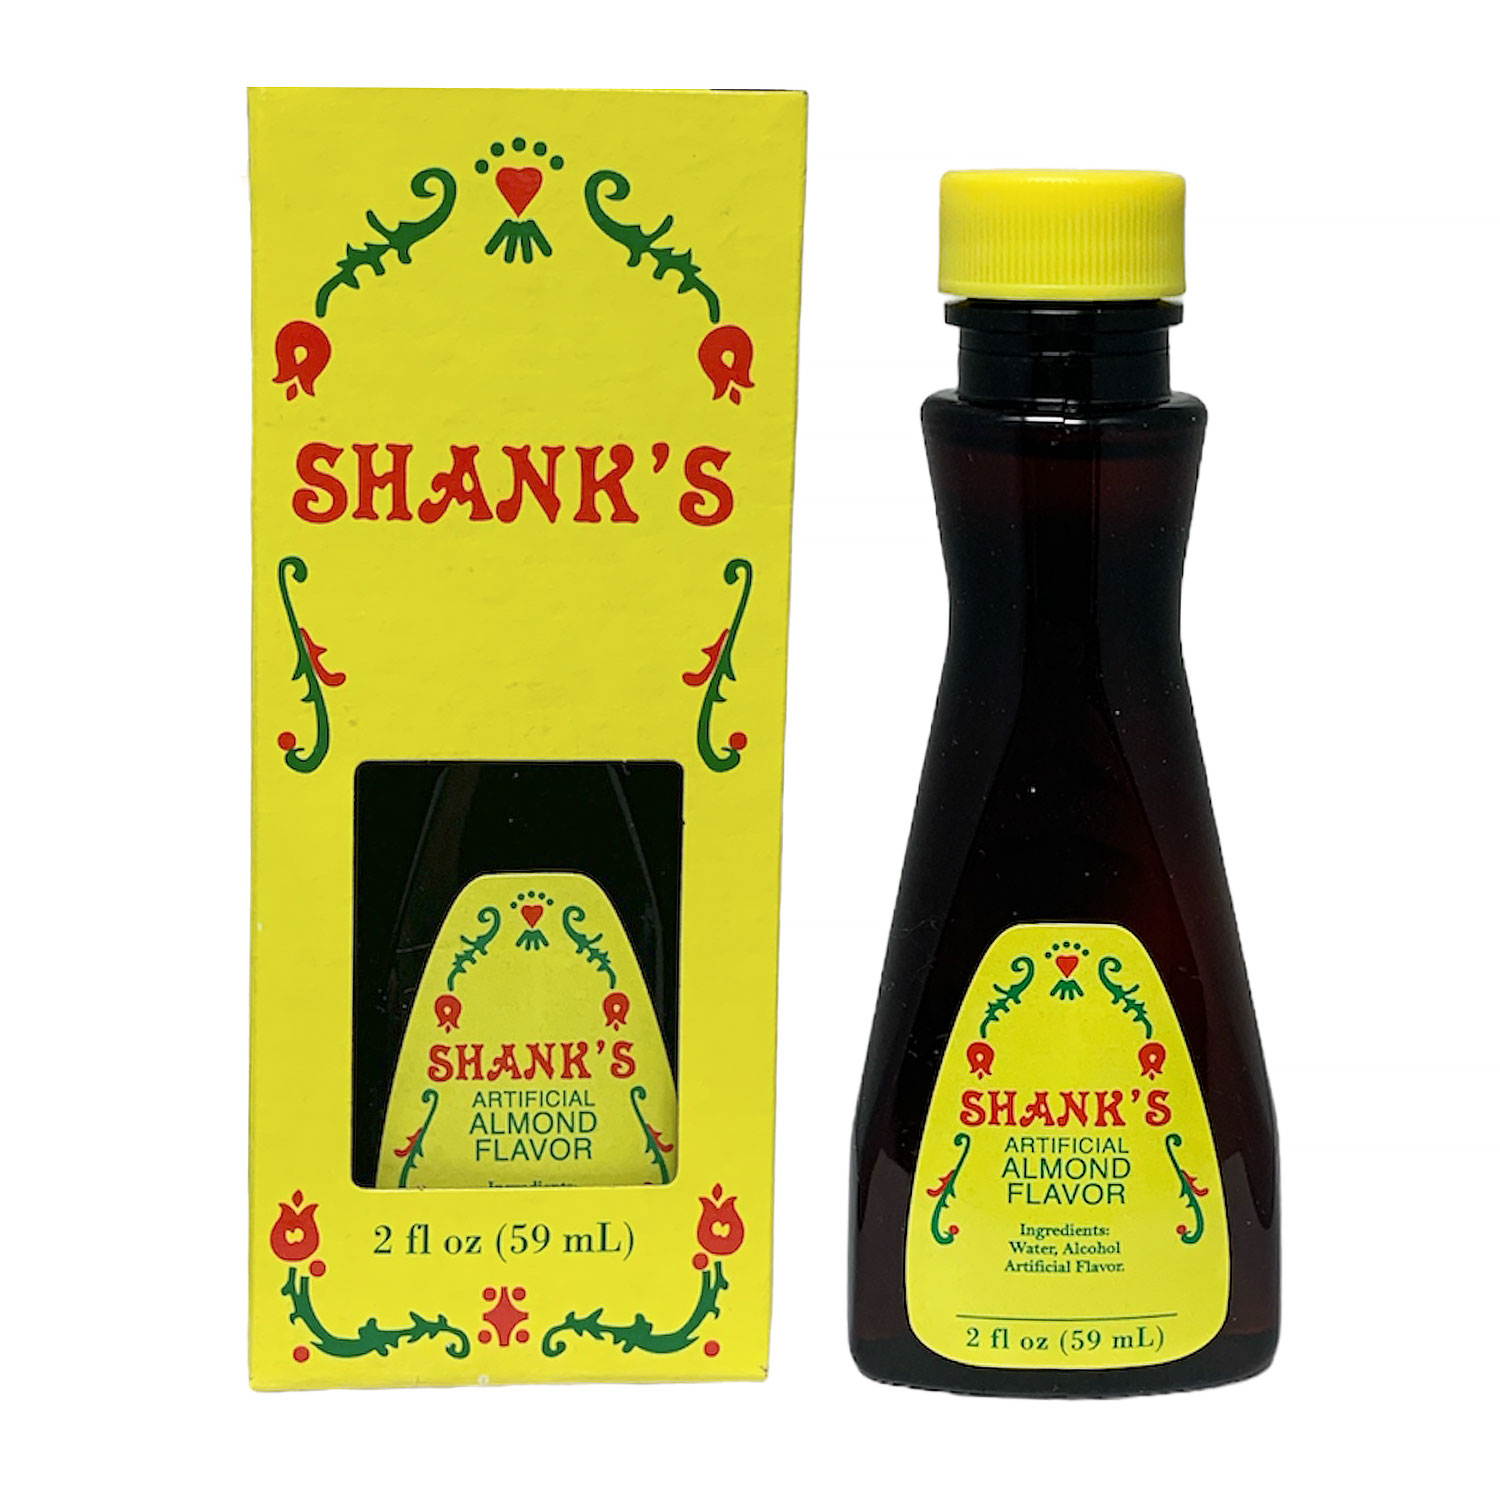 Shank's Almond Flavor